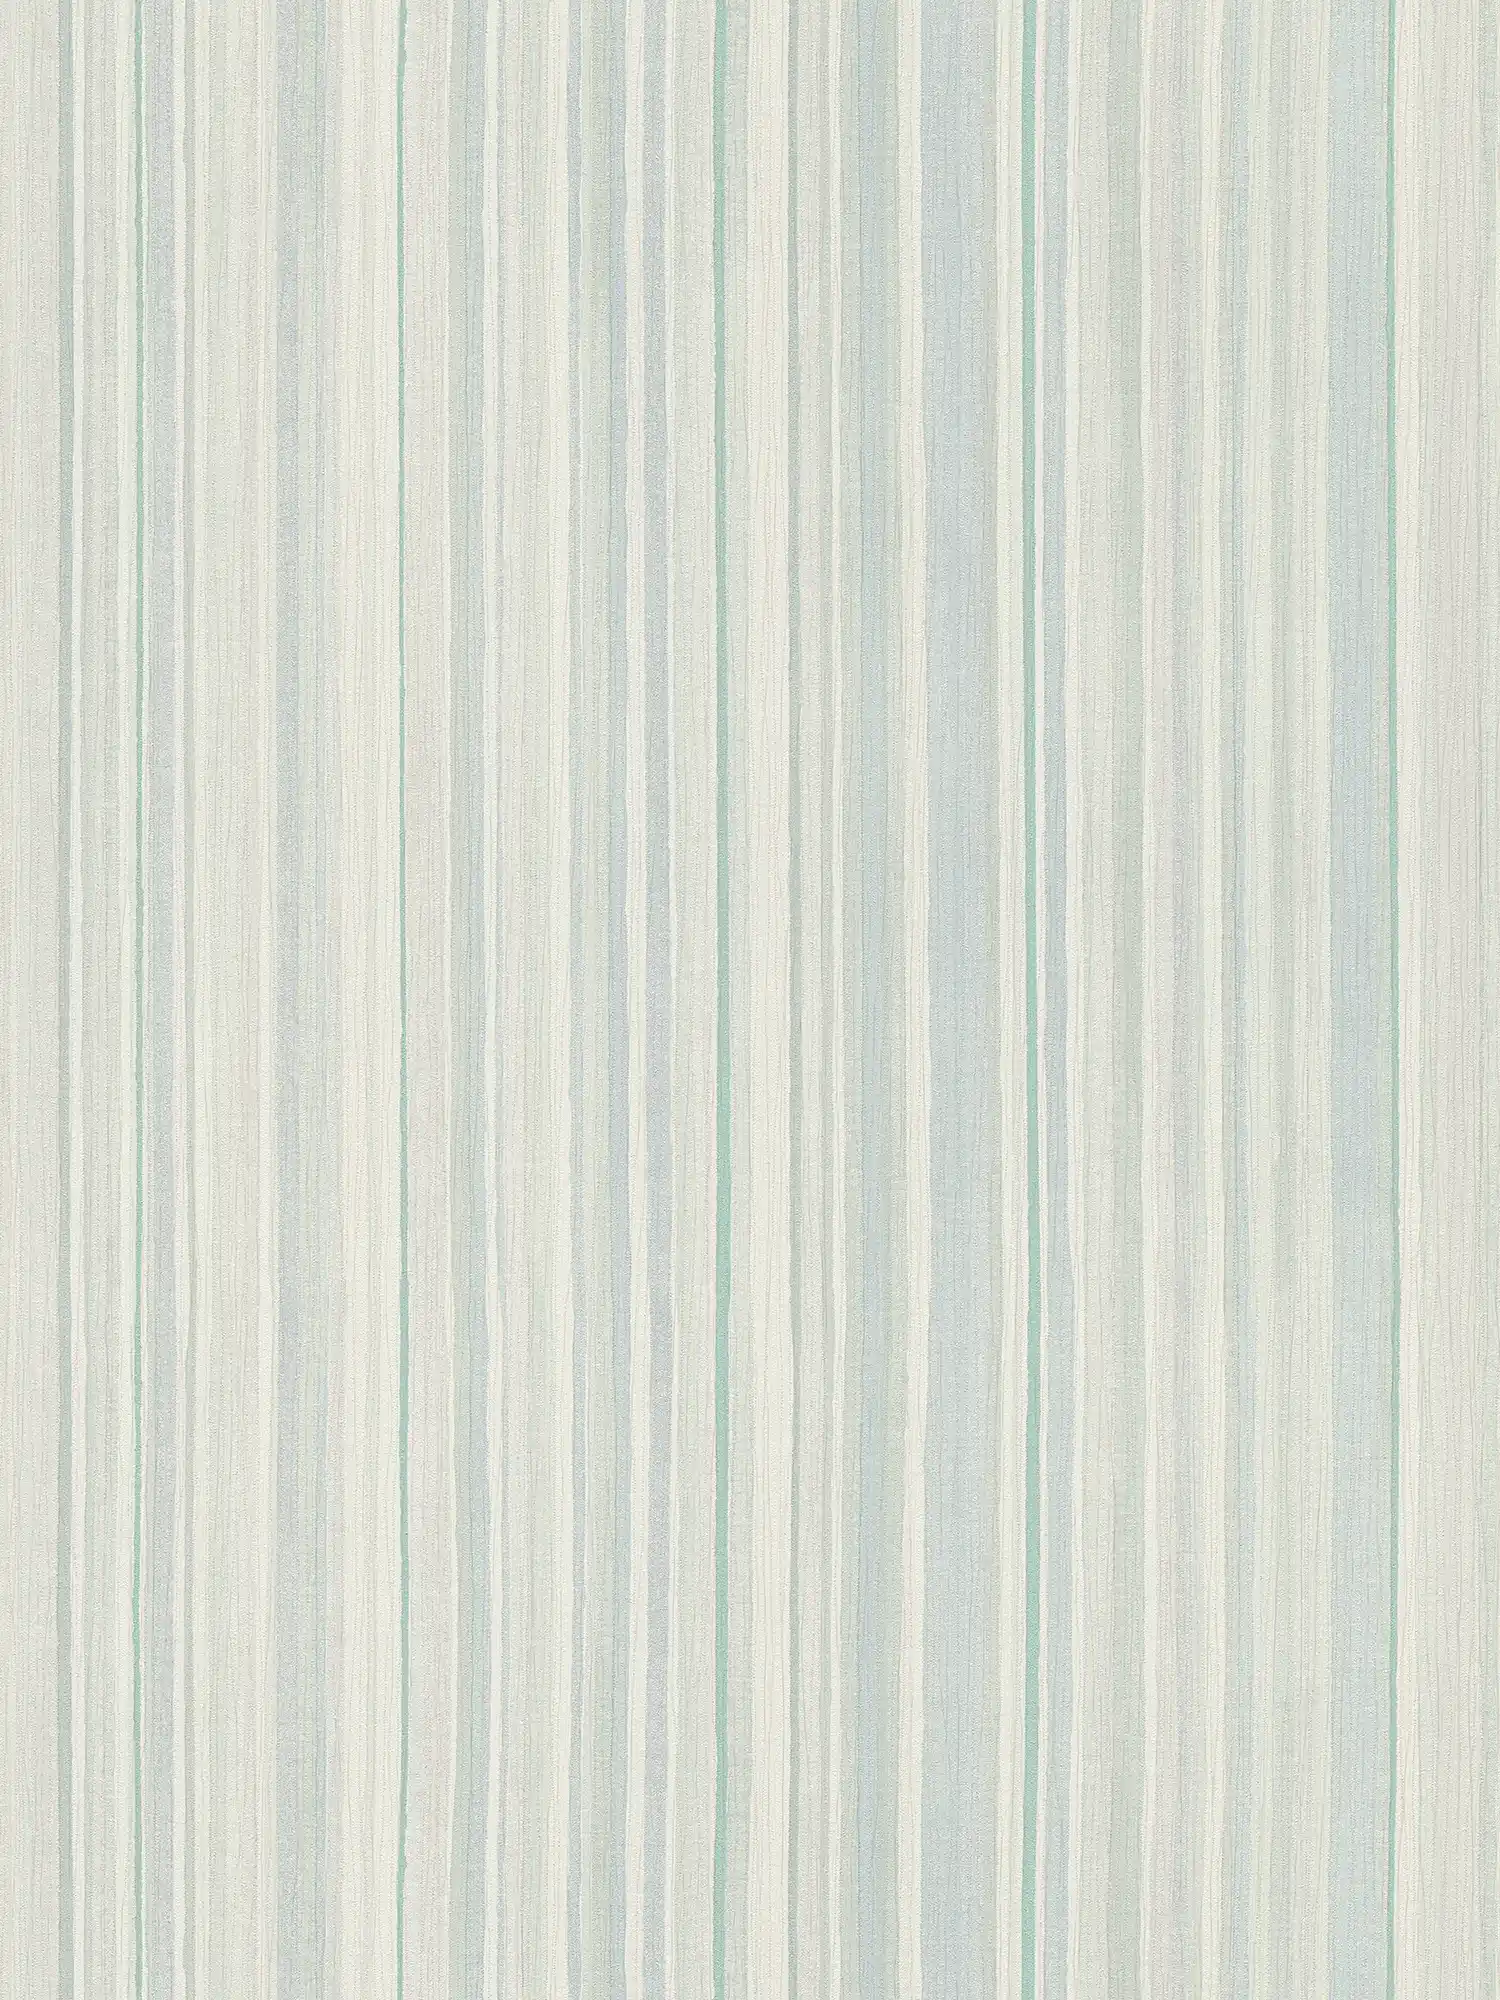 Gestreept behang met lijnenspel - blauw, groen, grijs
